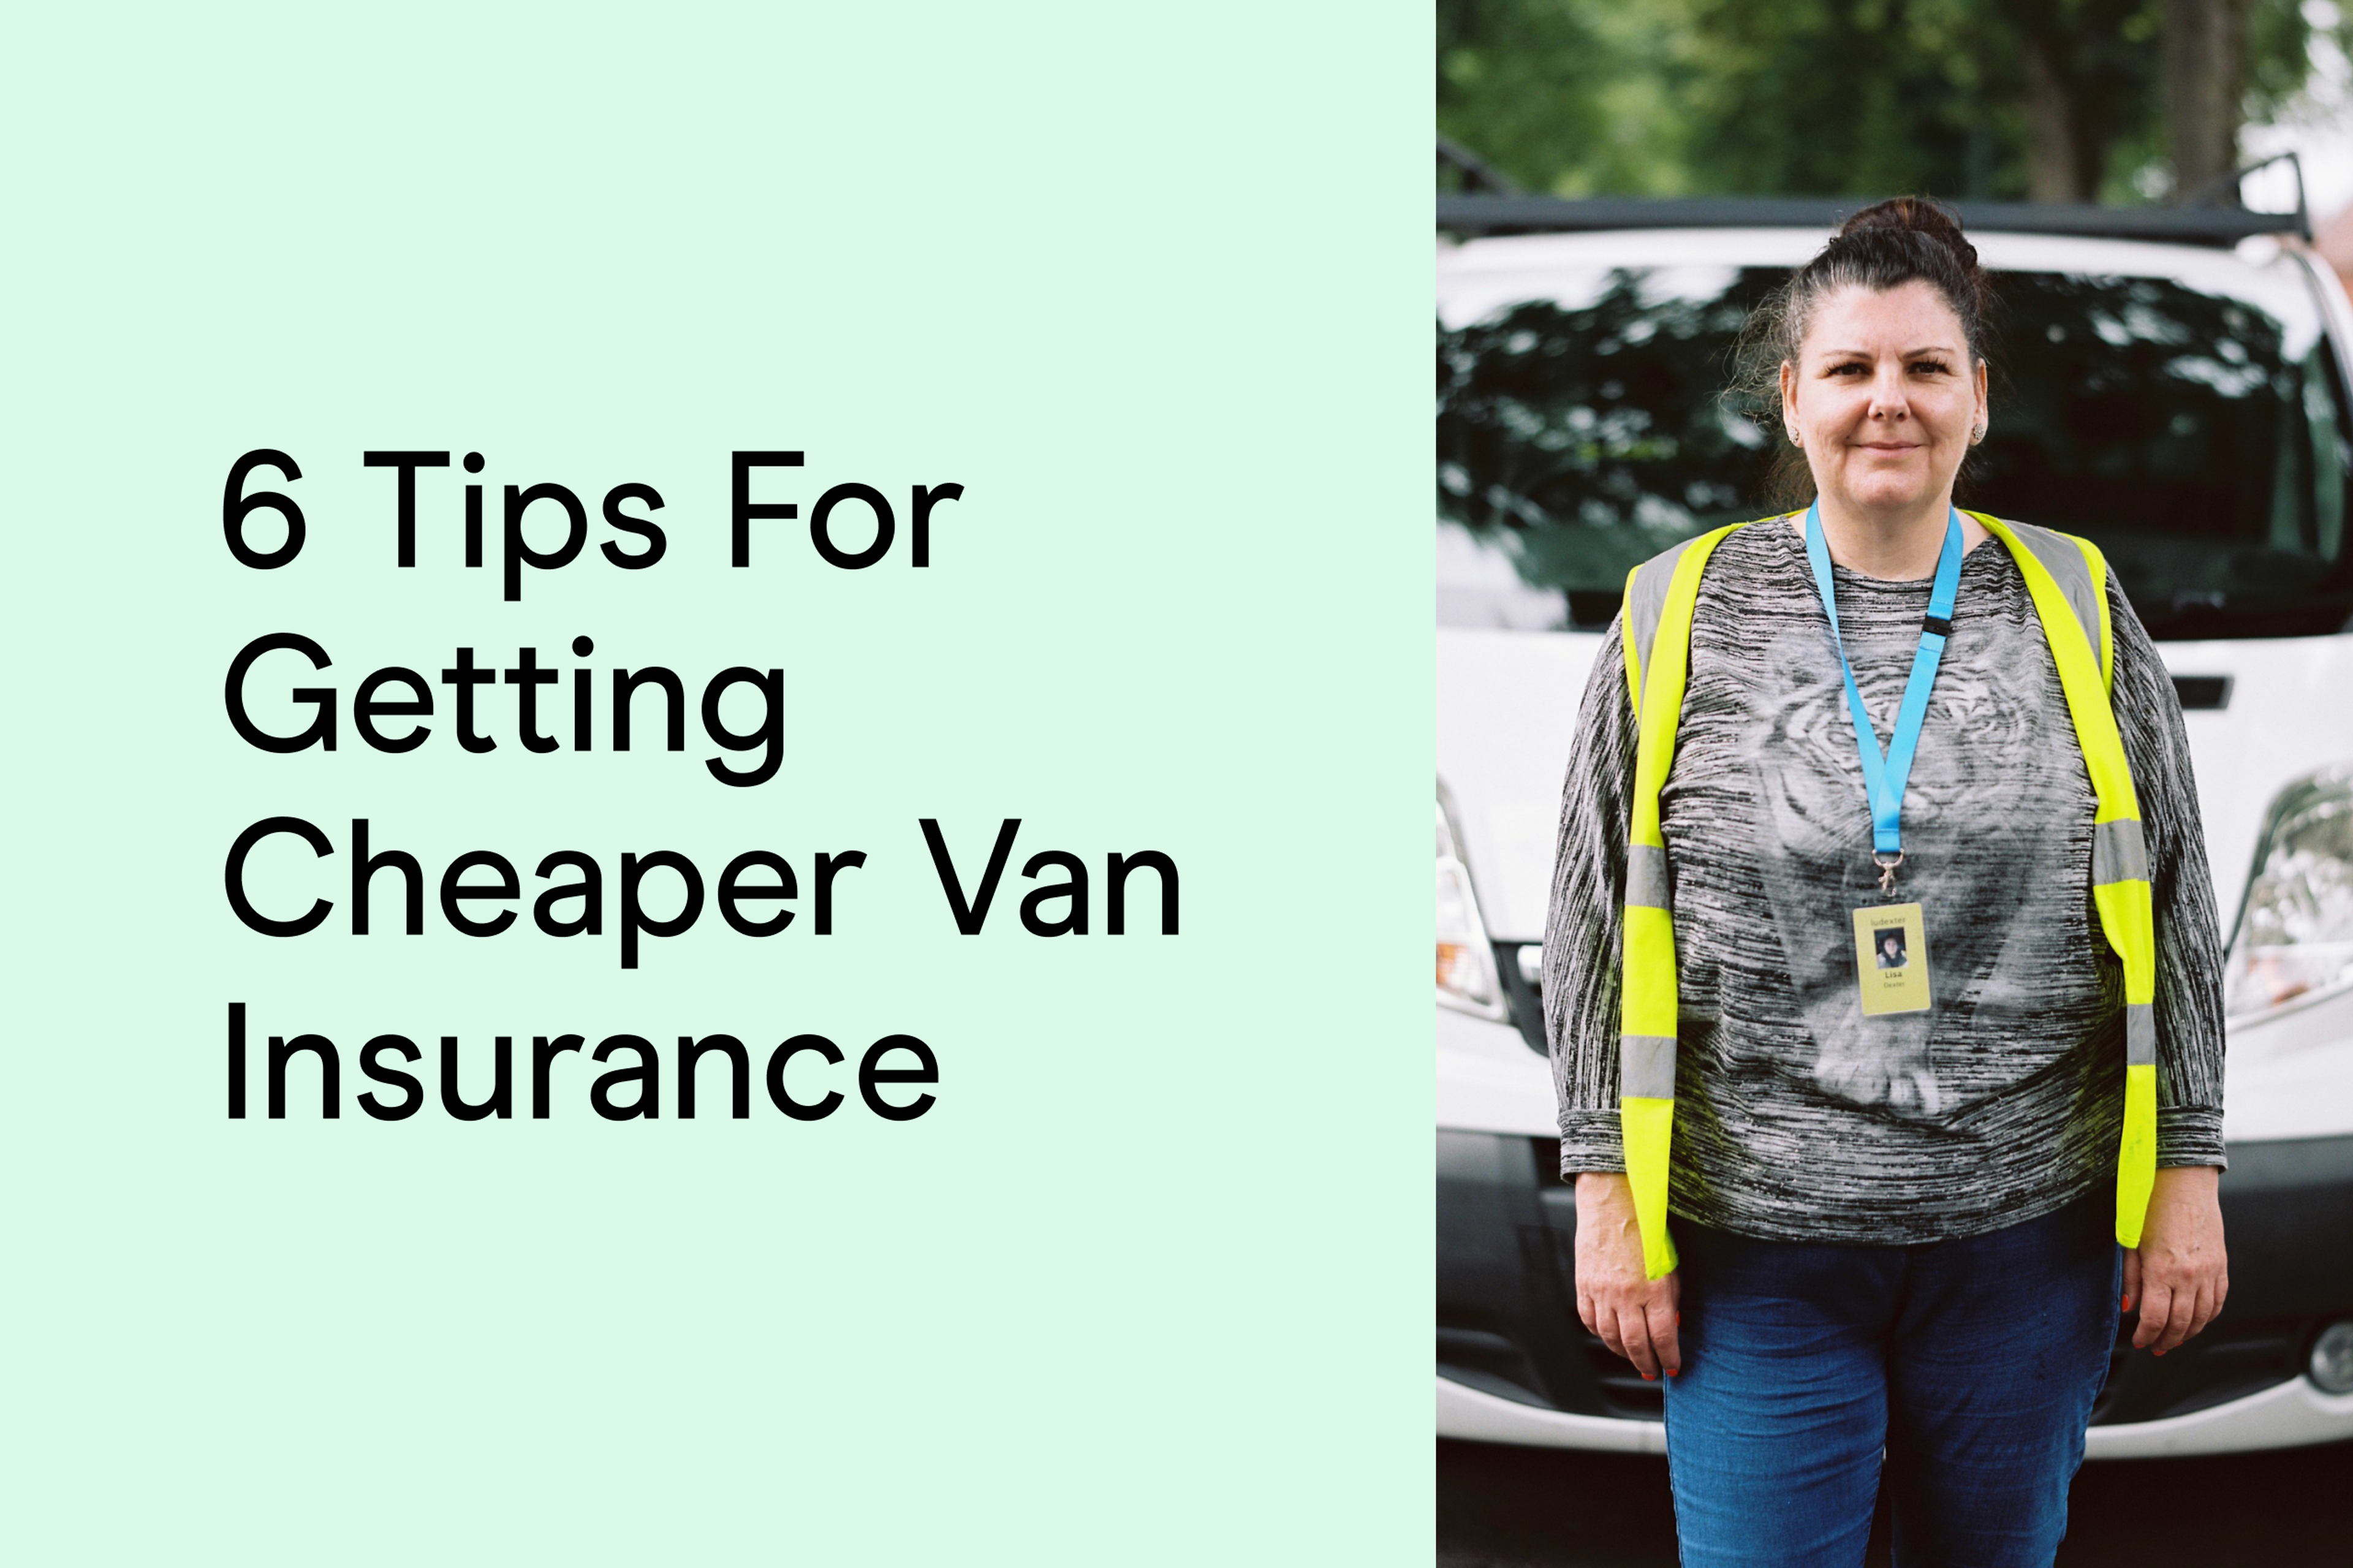 6 tips for getting cheaper van insurance